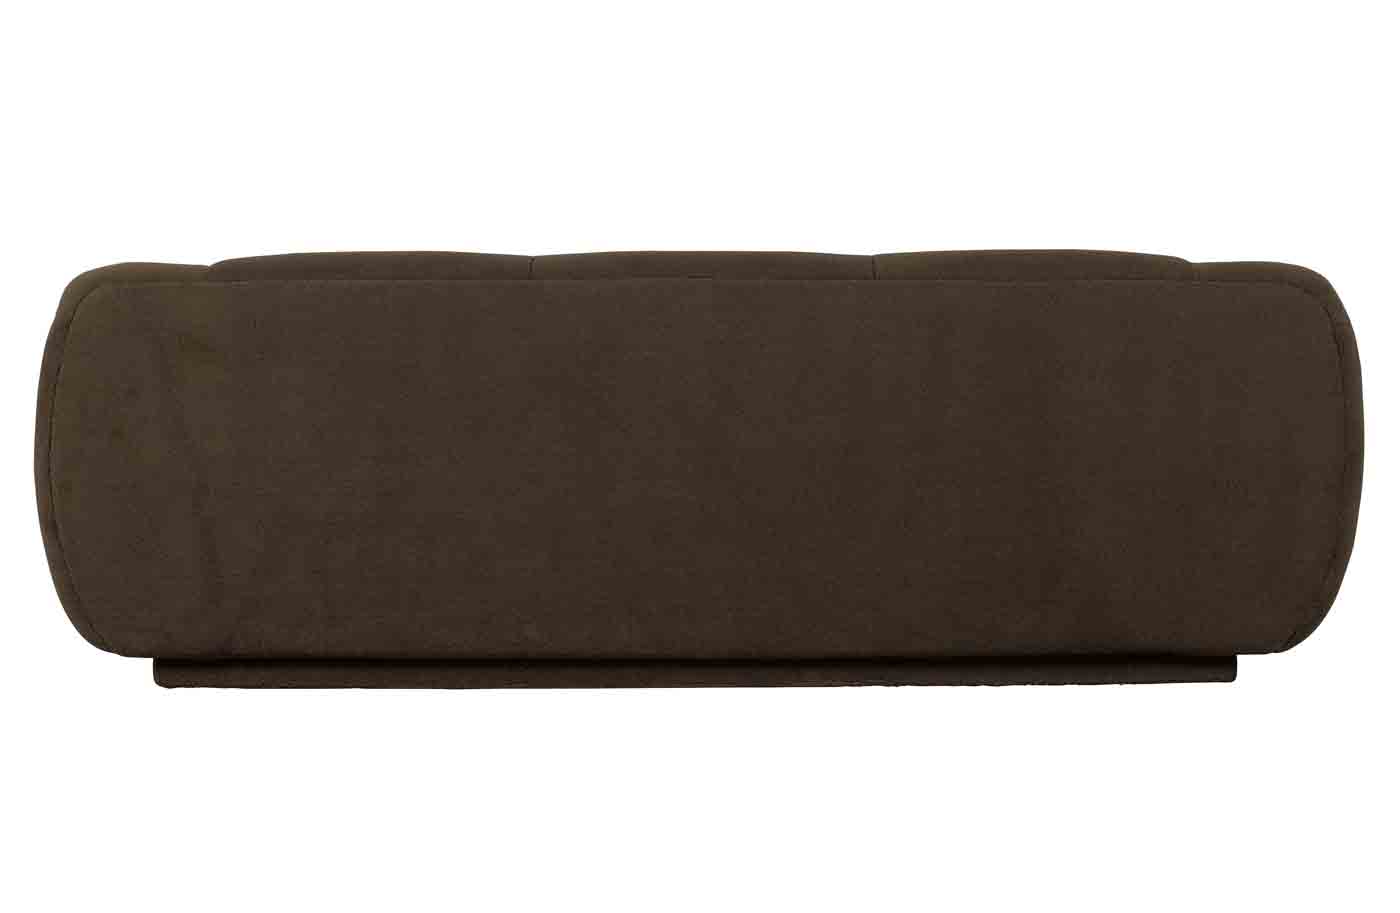 Bequemes 3-Sitzer Sofa Woolly in einem braunen Stoffbezug